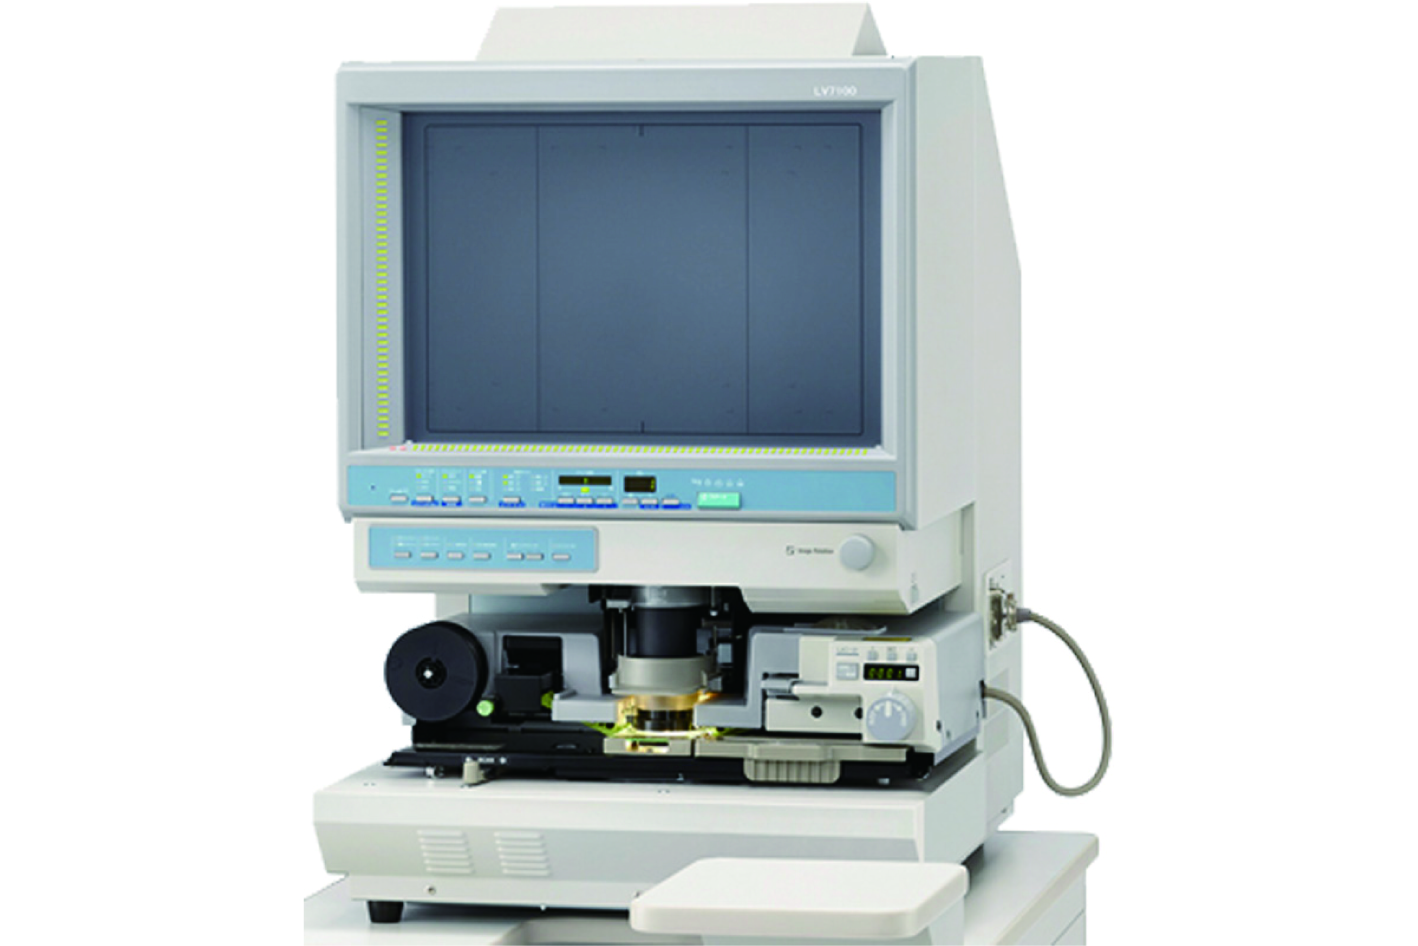 マイクロフィルムスキャナー LV7100